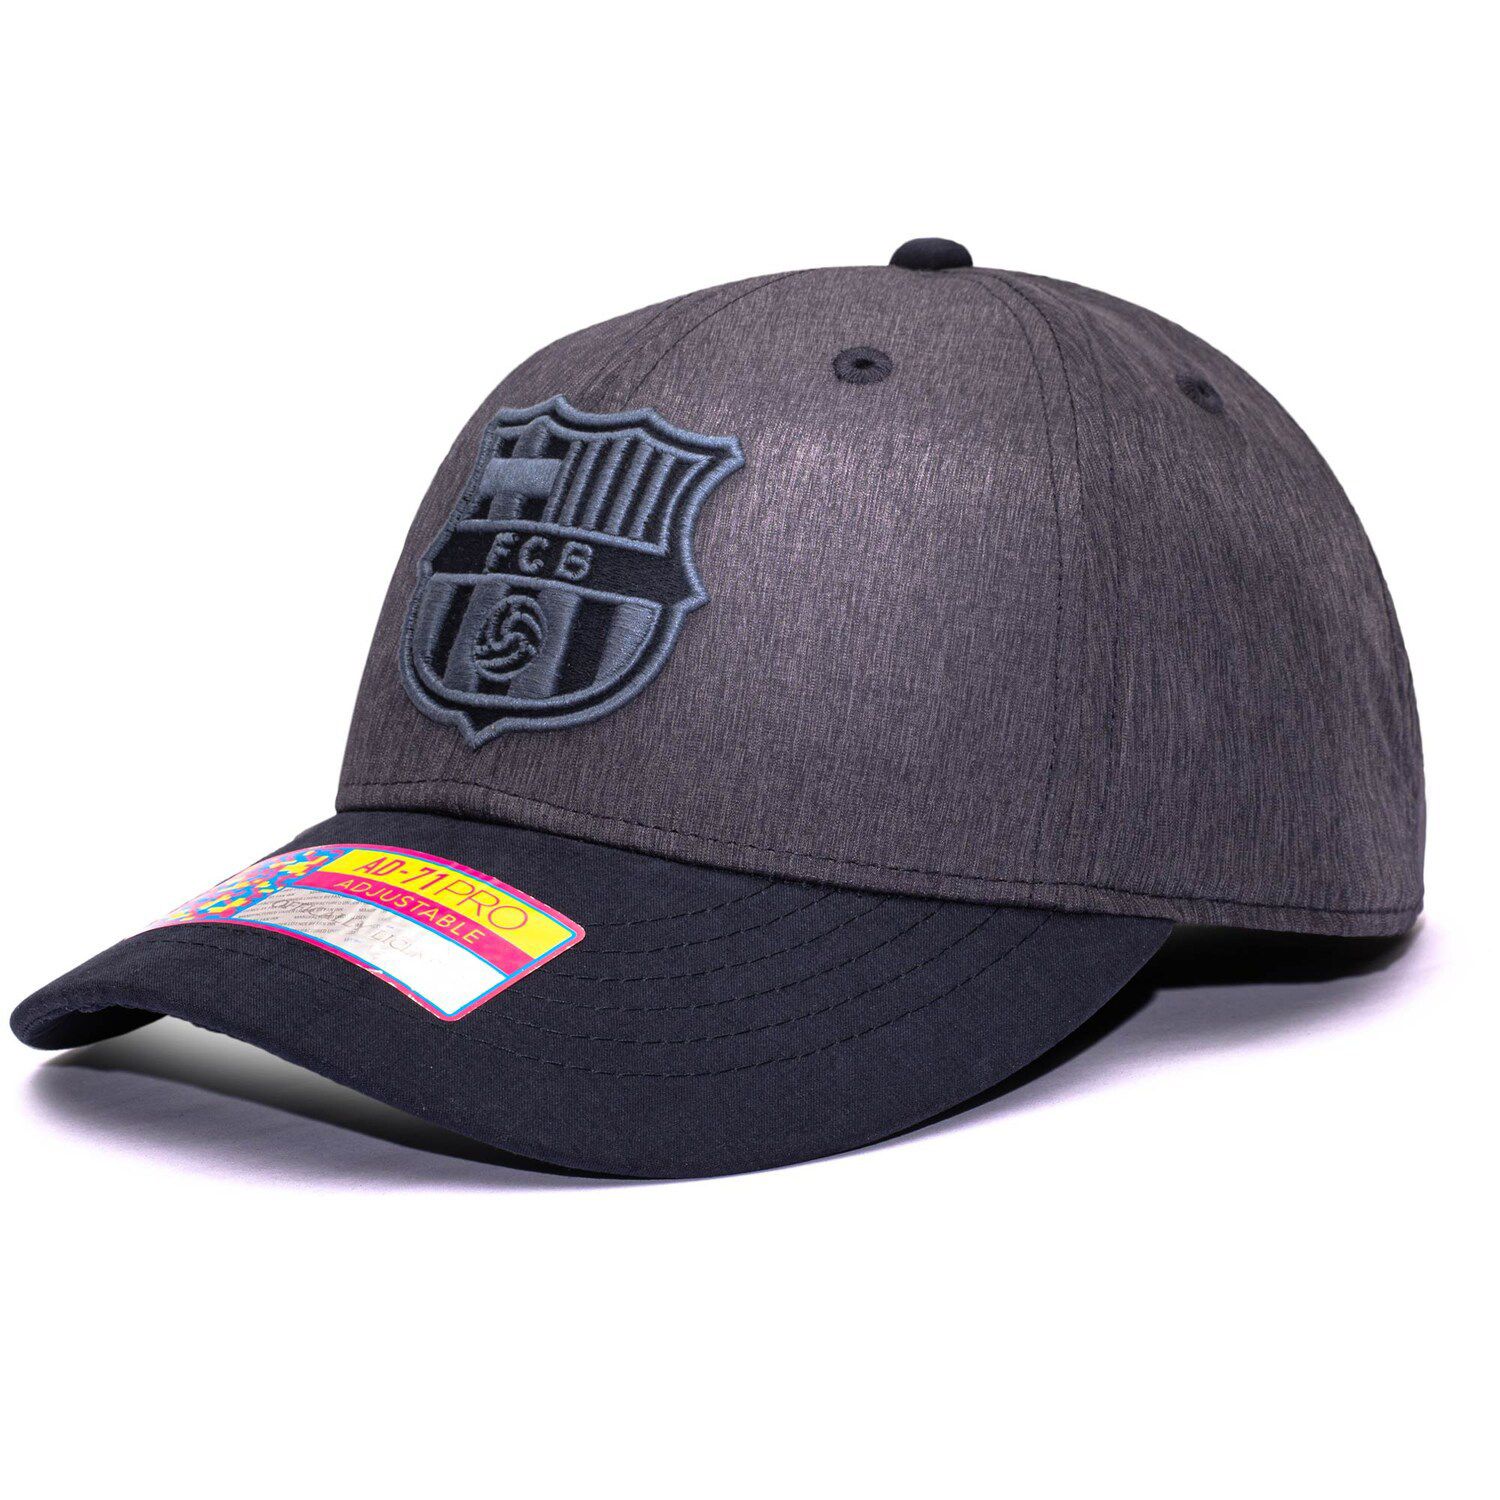 Image for Unbranded Men's Navy Barcelona Pitch Adjustable Hat at Kohl's.